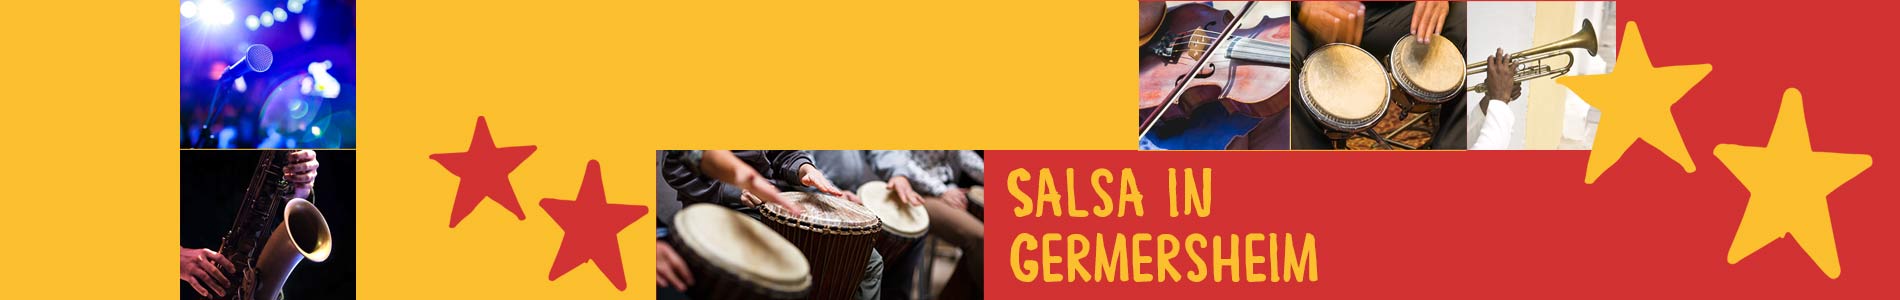 Salsa in Germersheim – Salsa lernen und tanzen, Tanzkurse, Partys, Veranstaltungen